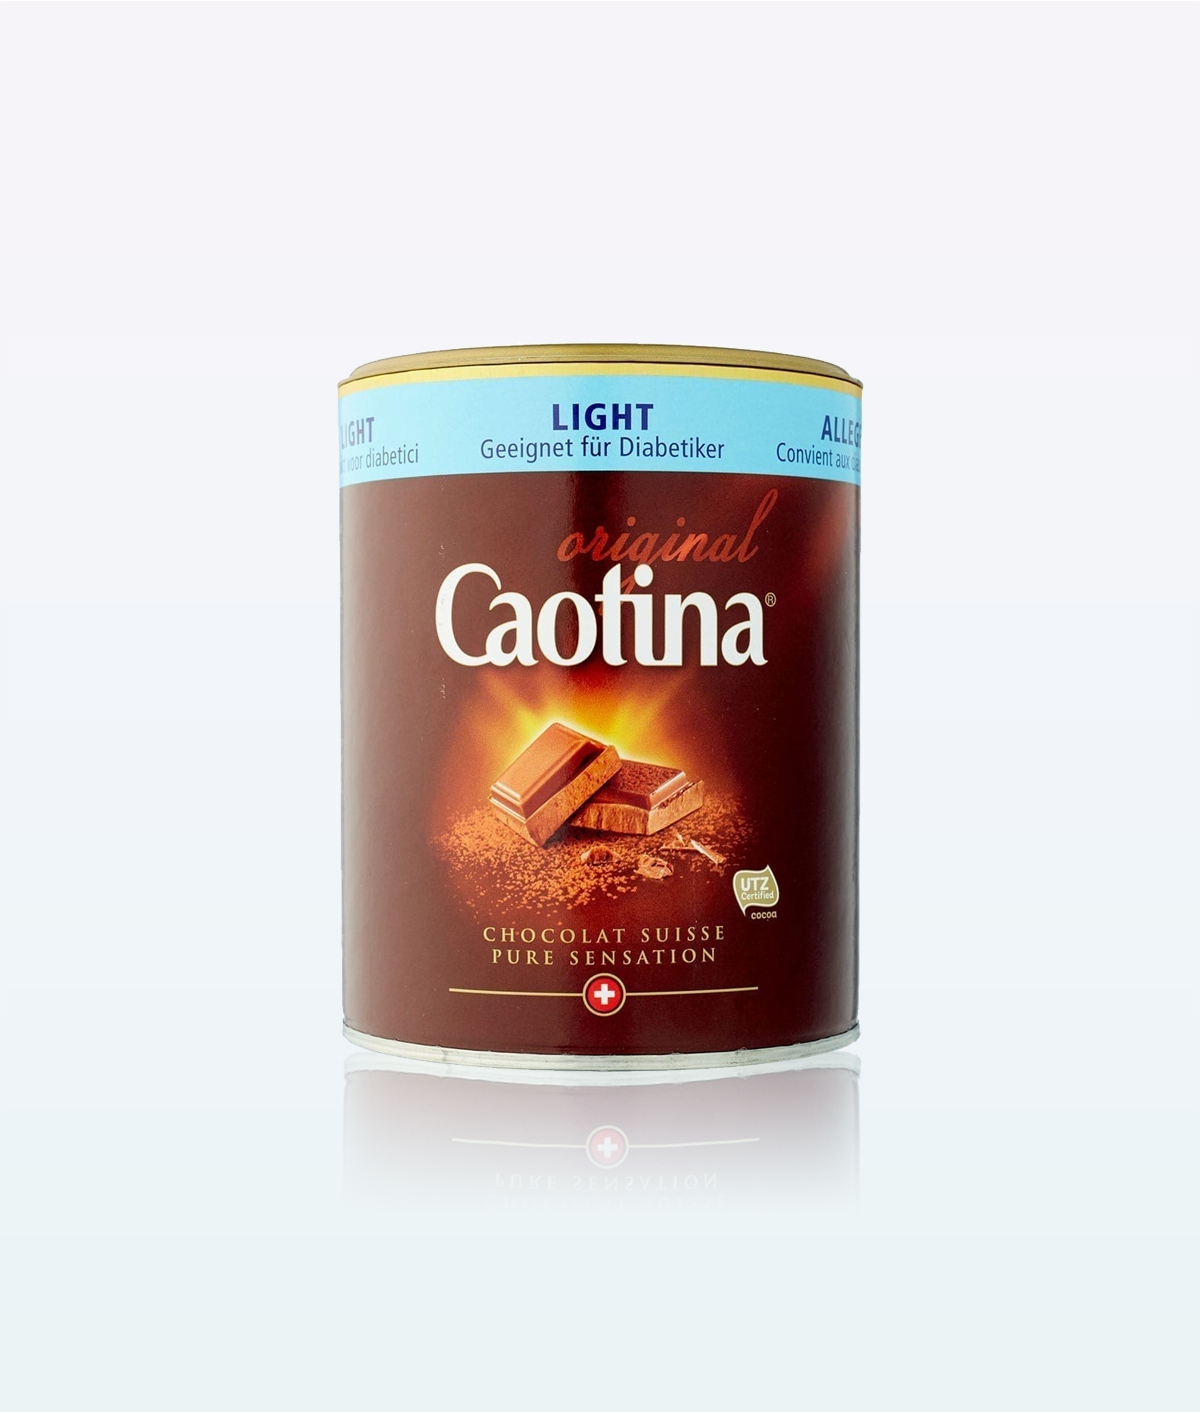 Caotina Chocolate Powder Original light 350g